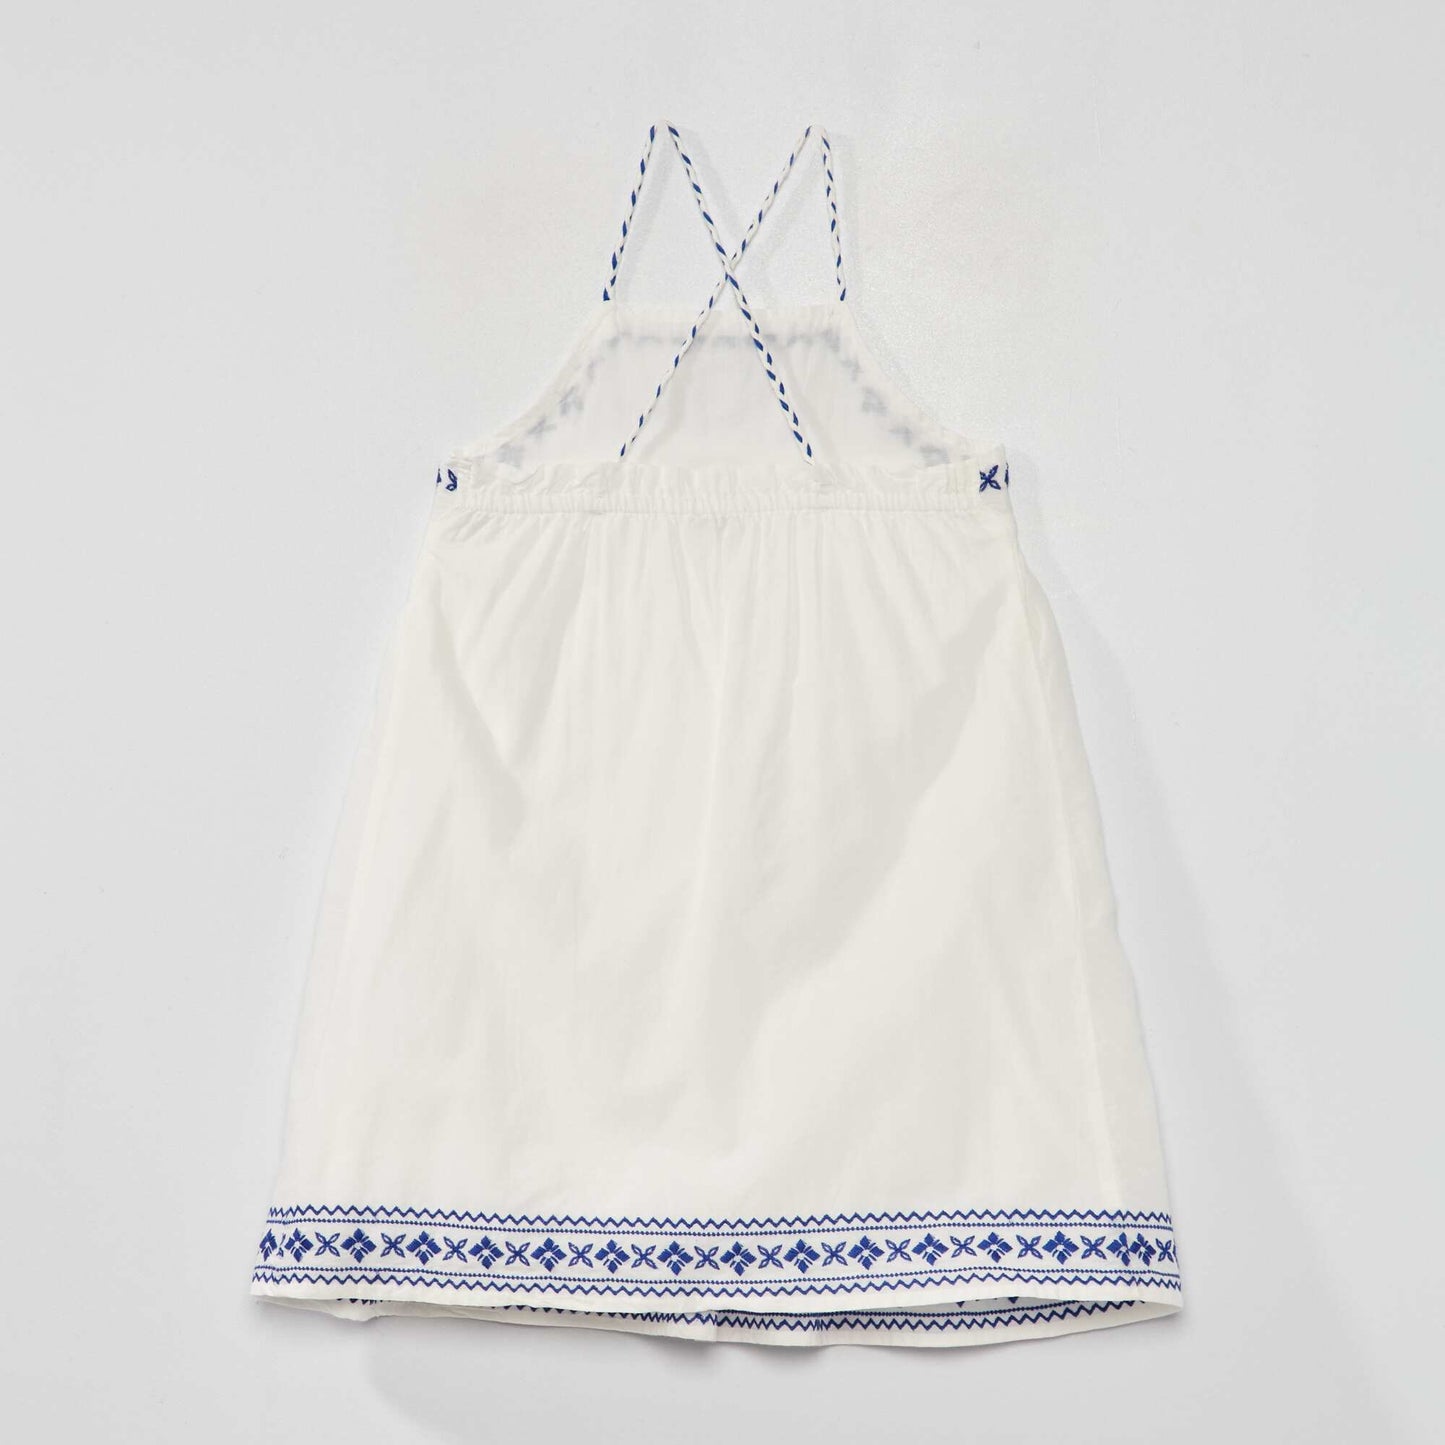 Embroidered full-skirt dress white/blue